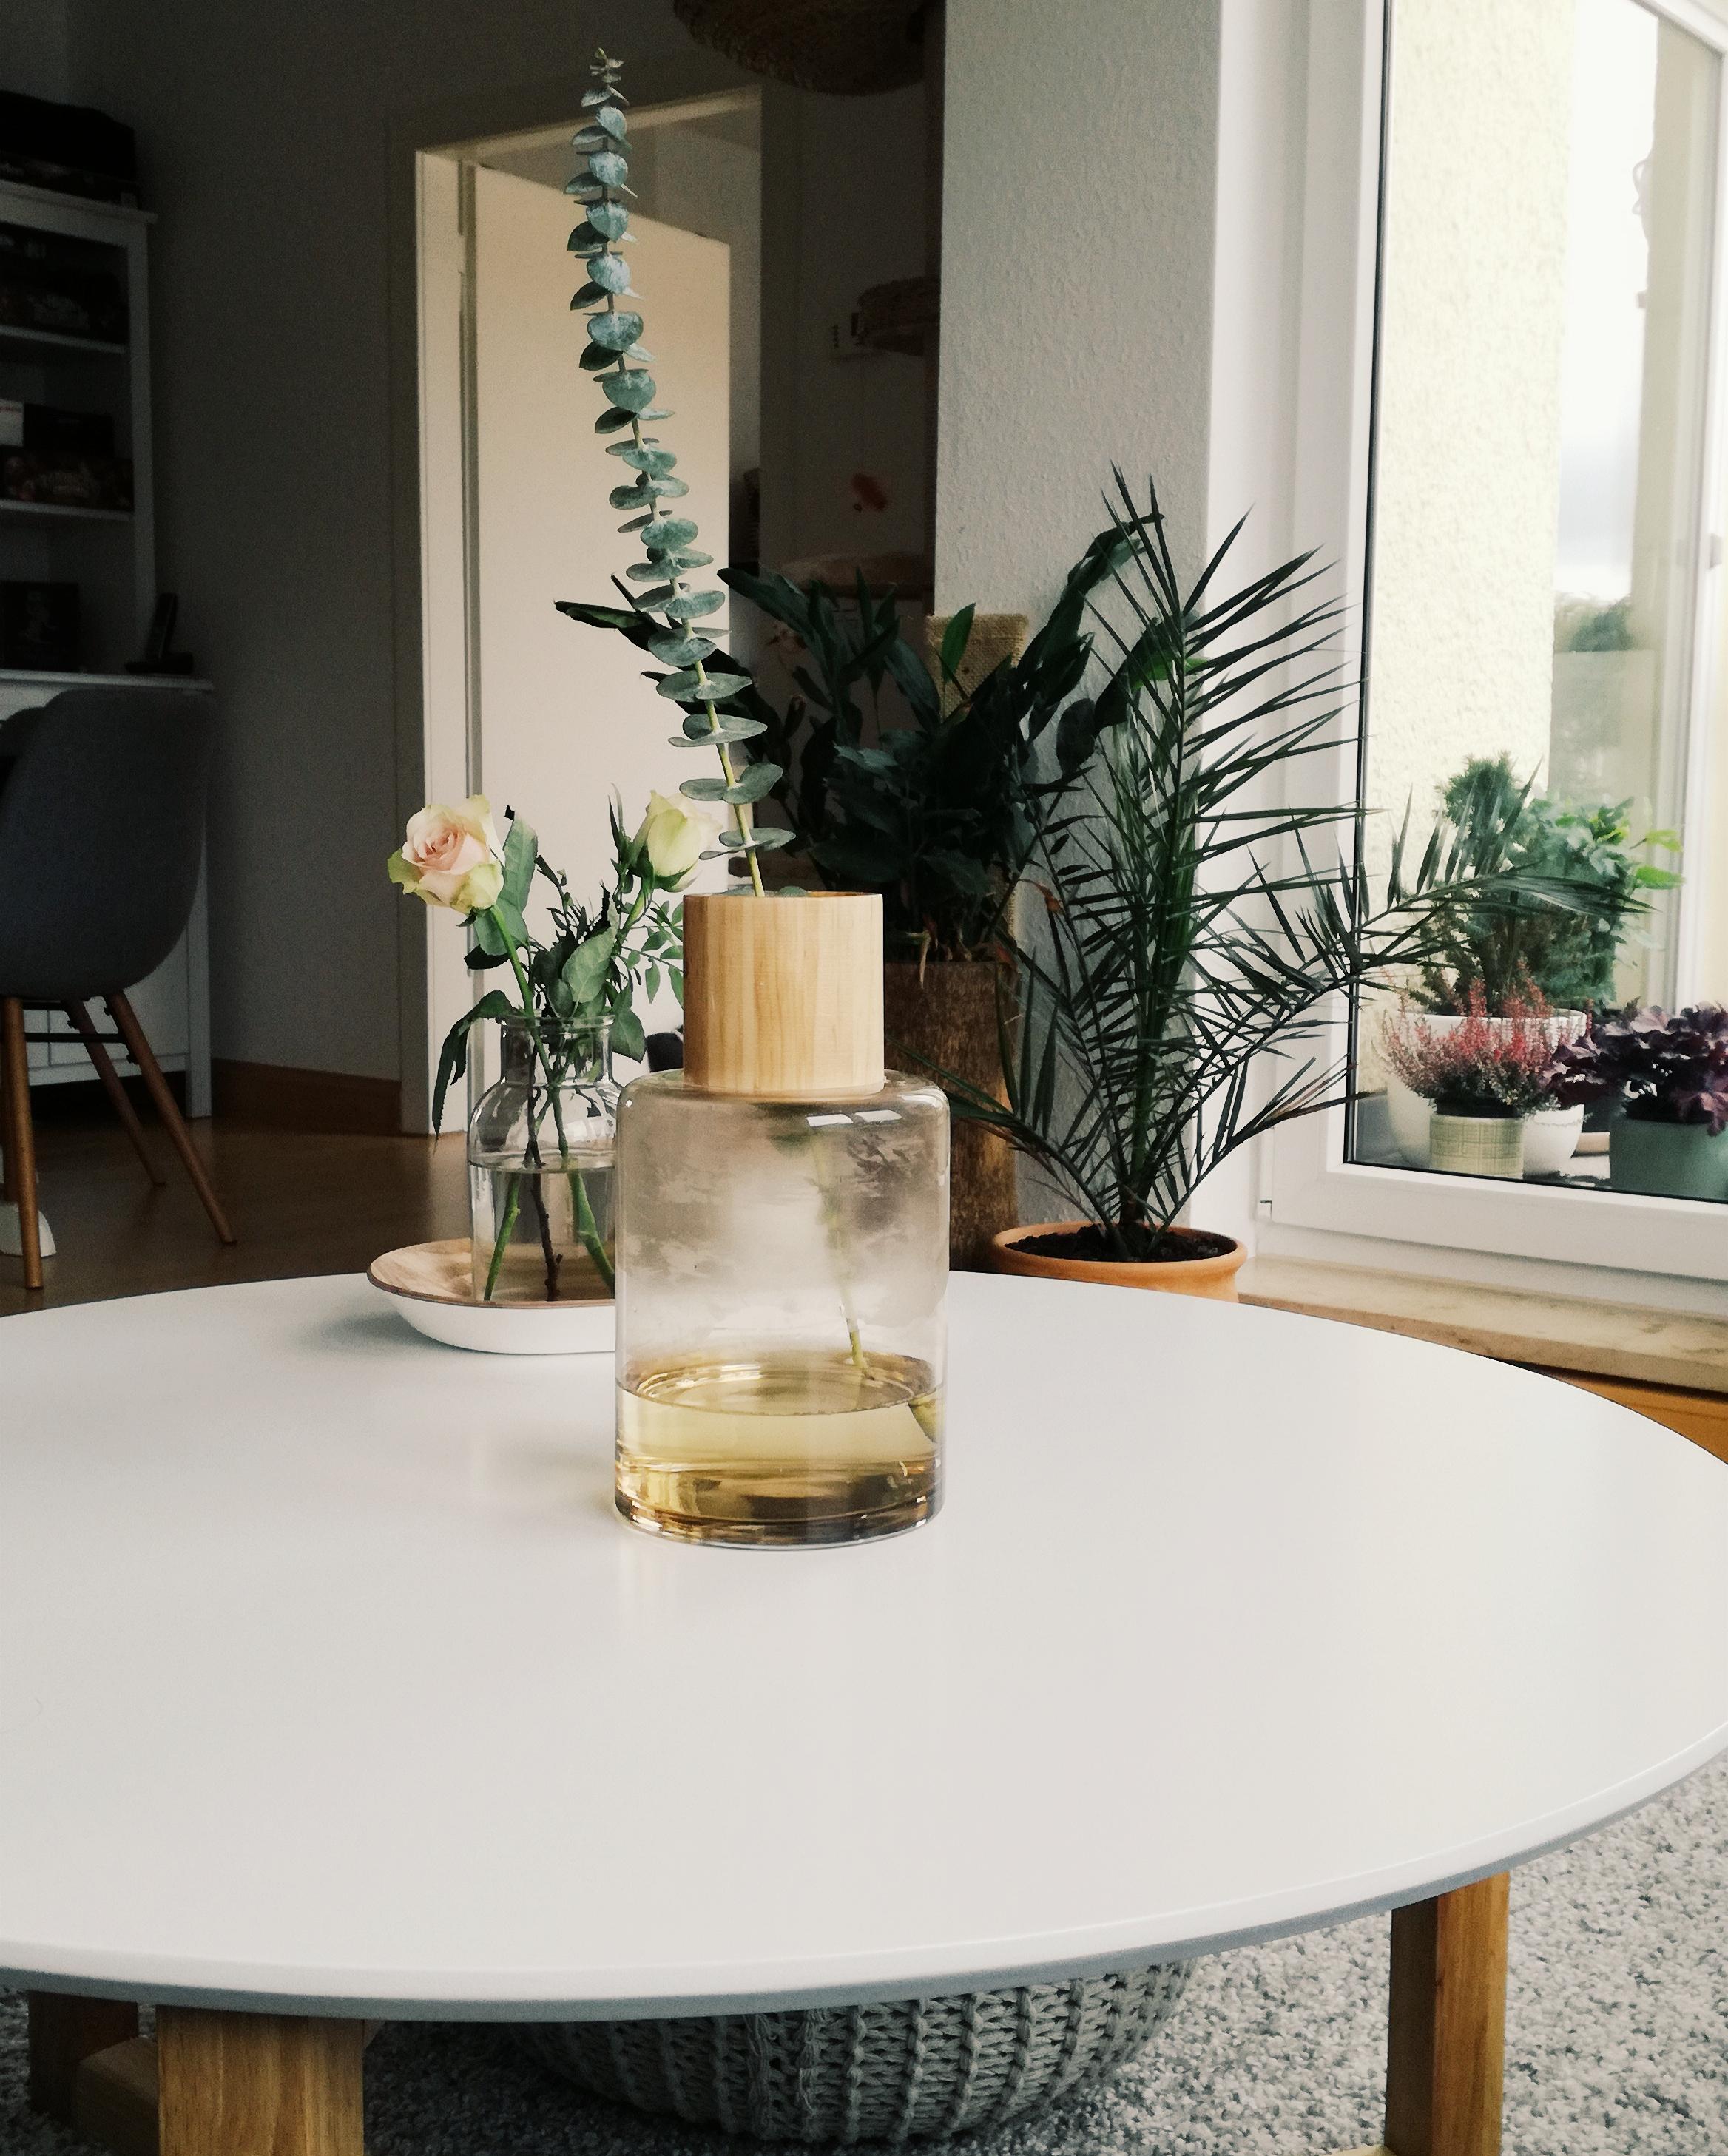 Ich liebe den geradlinigen Stil der Vase mit dem Eucalyptus ❤ #hygge #skandi #cozy #livingroom